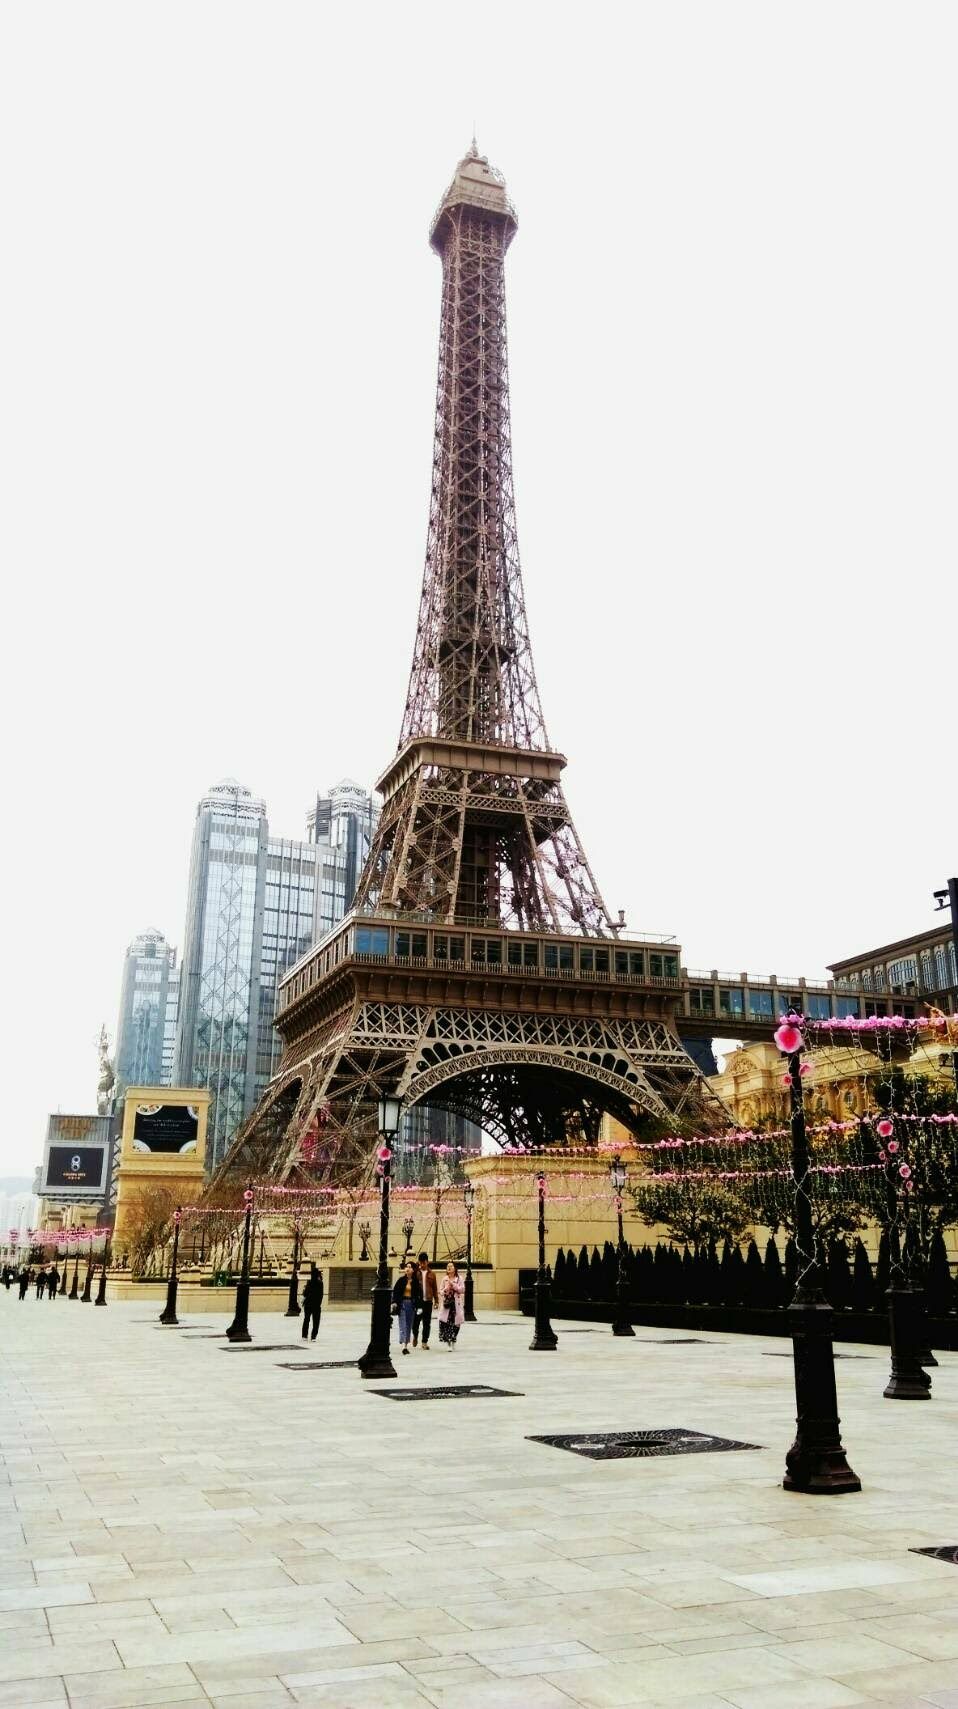 澳门巴黎铁塔高度图片